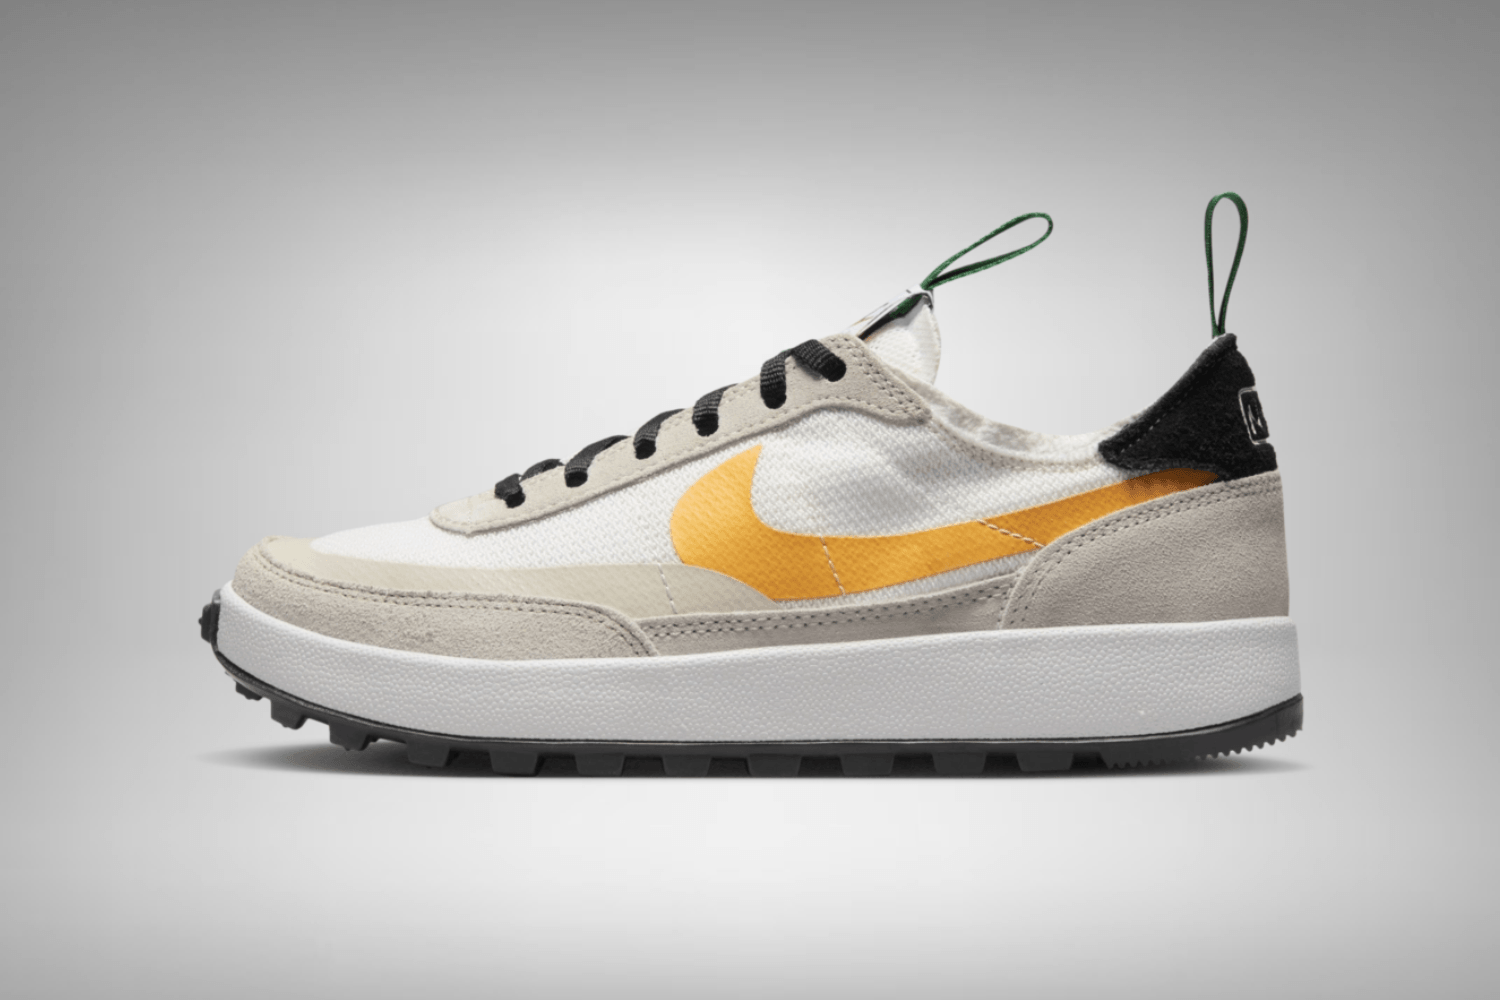 Der Tom Sachs x Nike General Purpose Shoe kehrt zurück